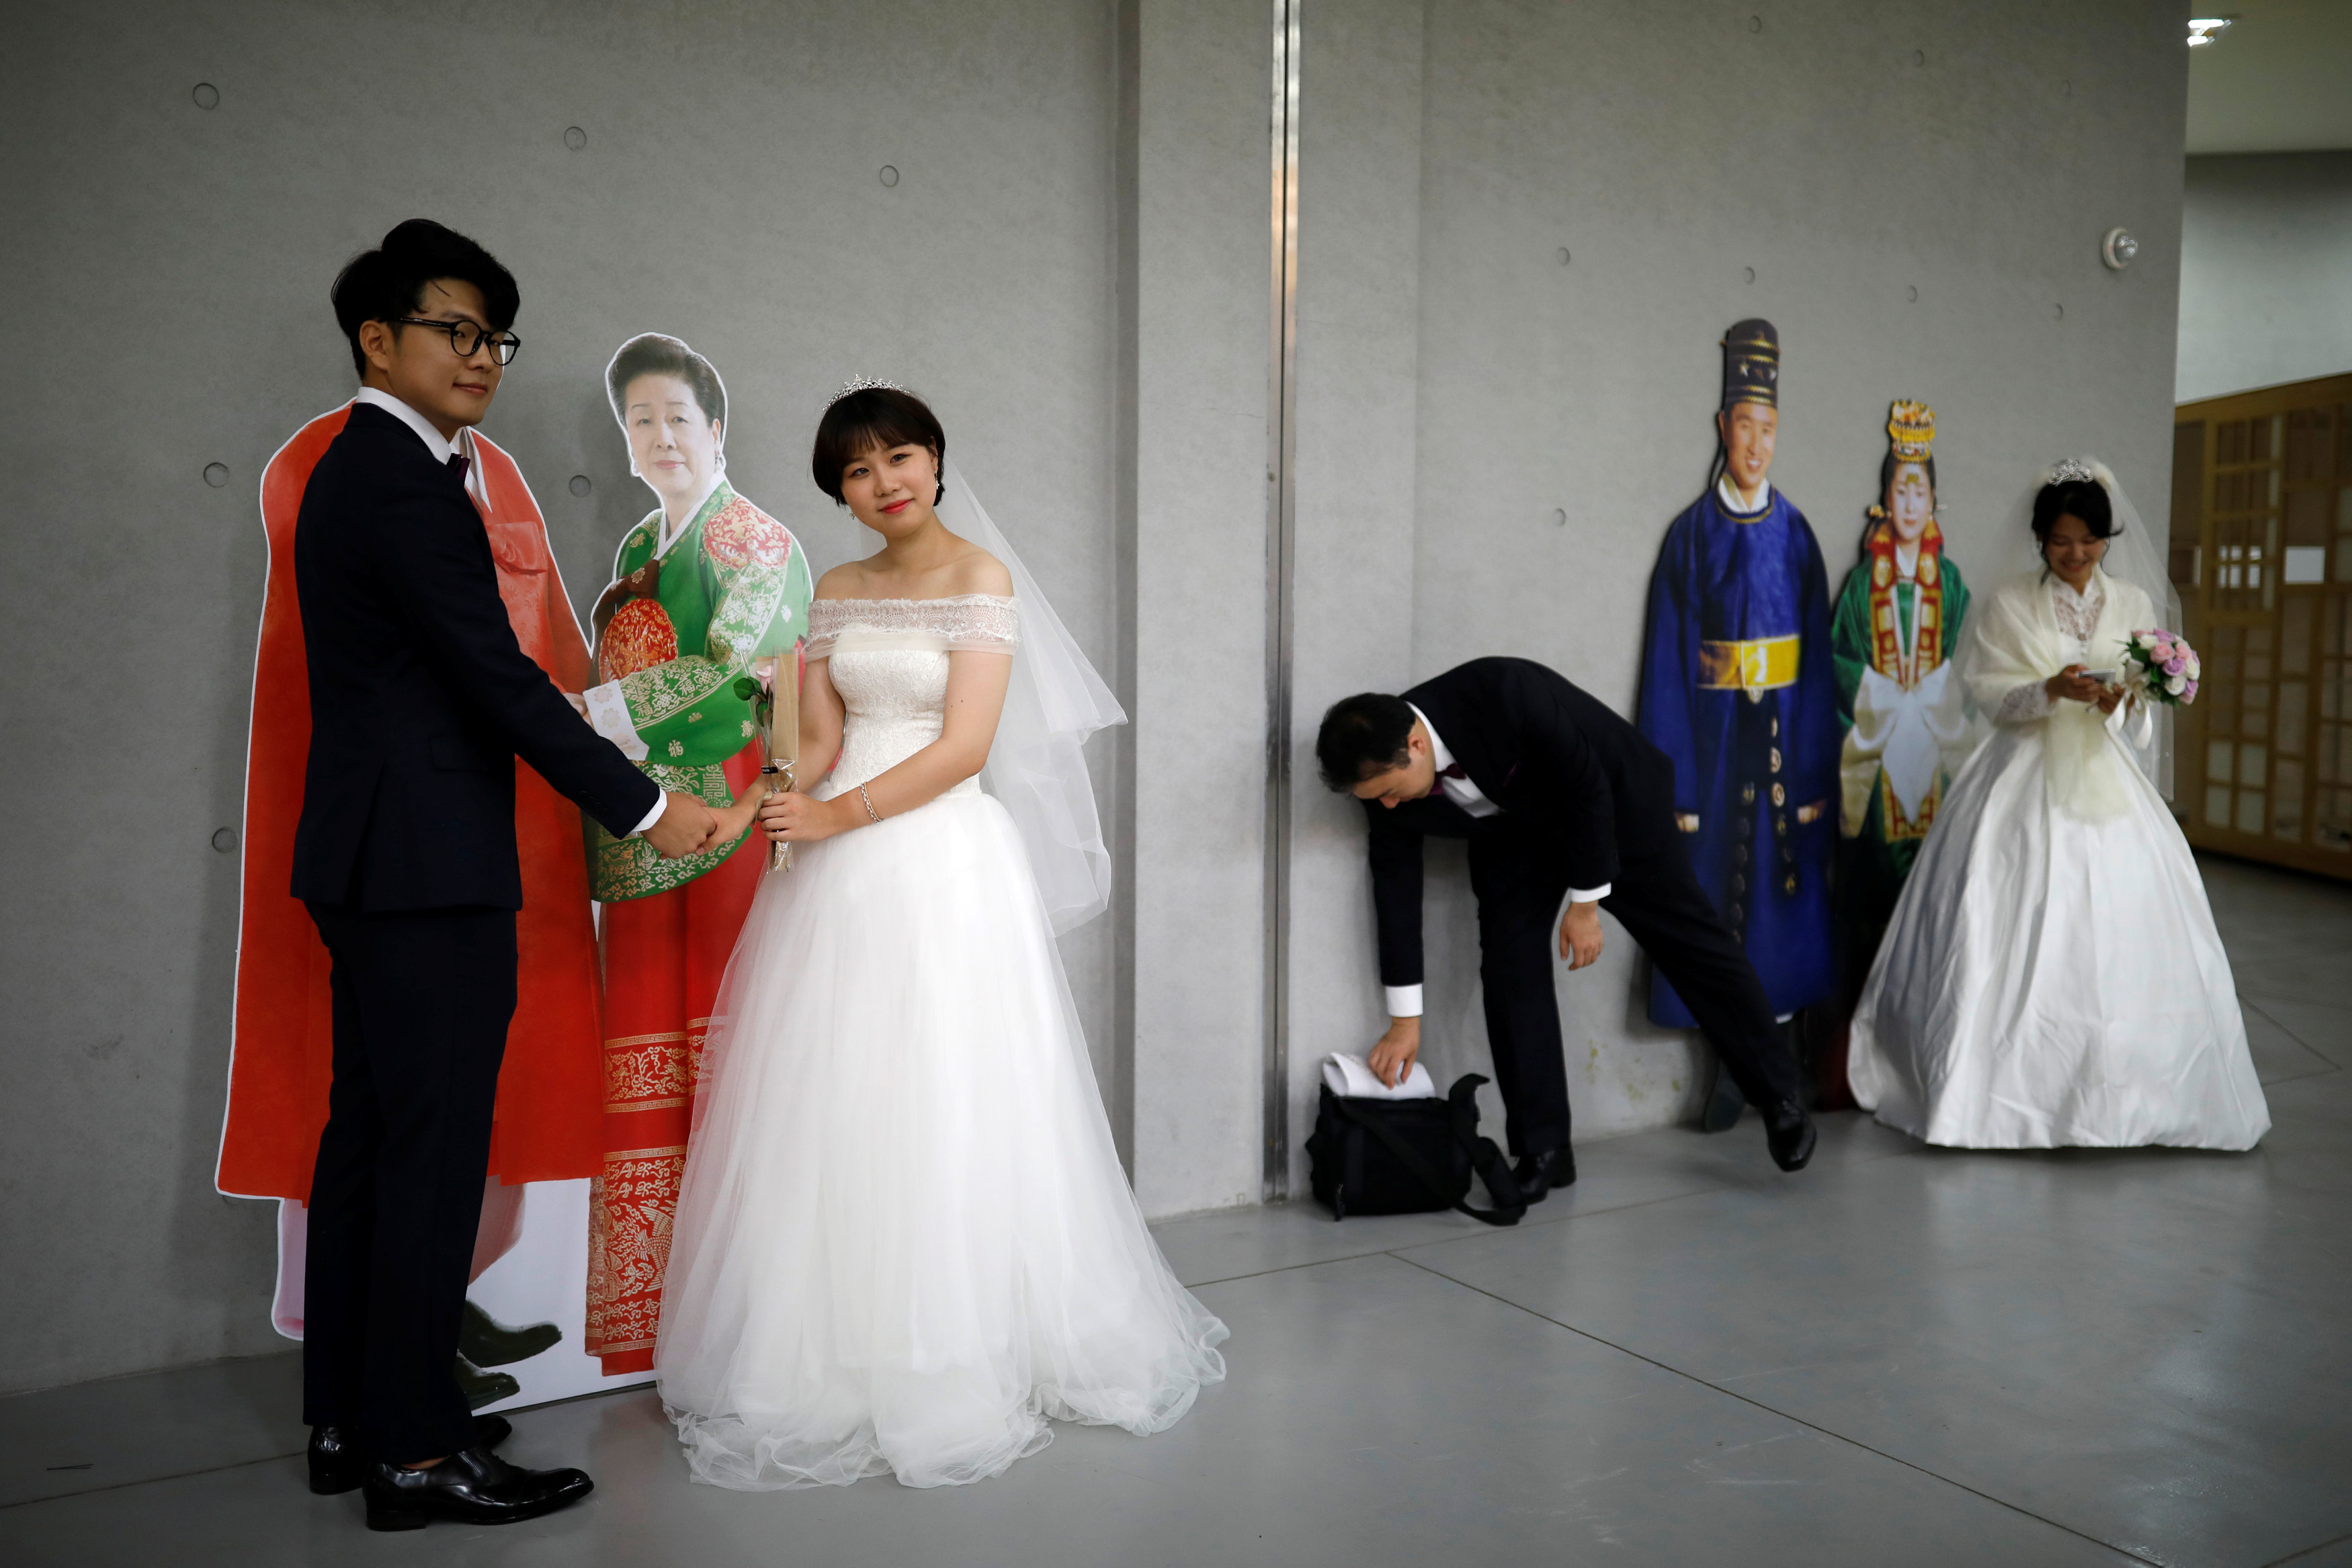 عروسان يلتقطان صورا تذكارية لليلة العمر